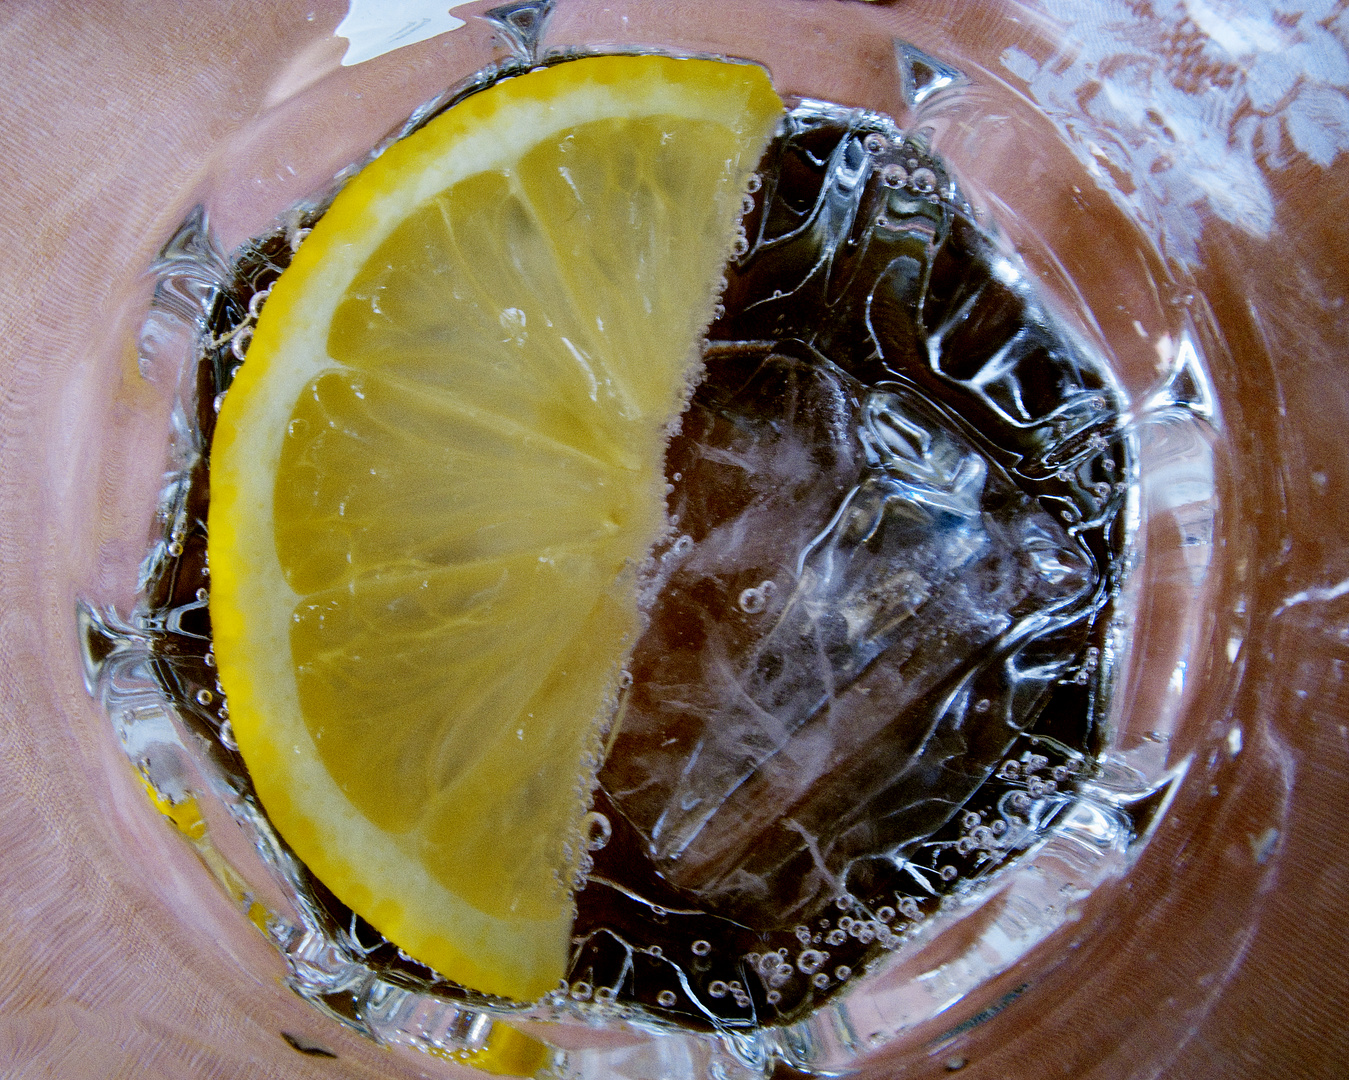 Mineralwasser mit Zitrone